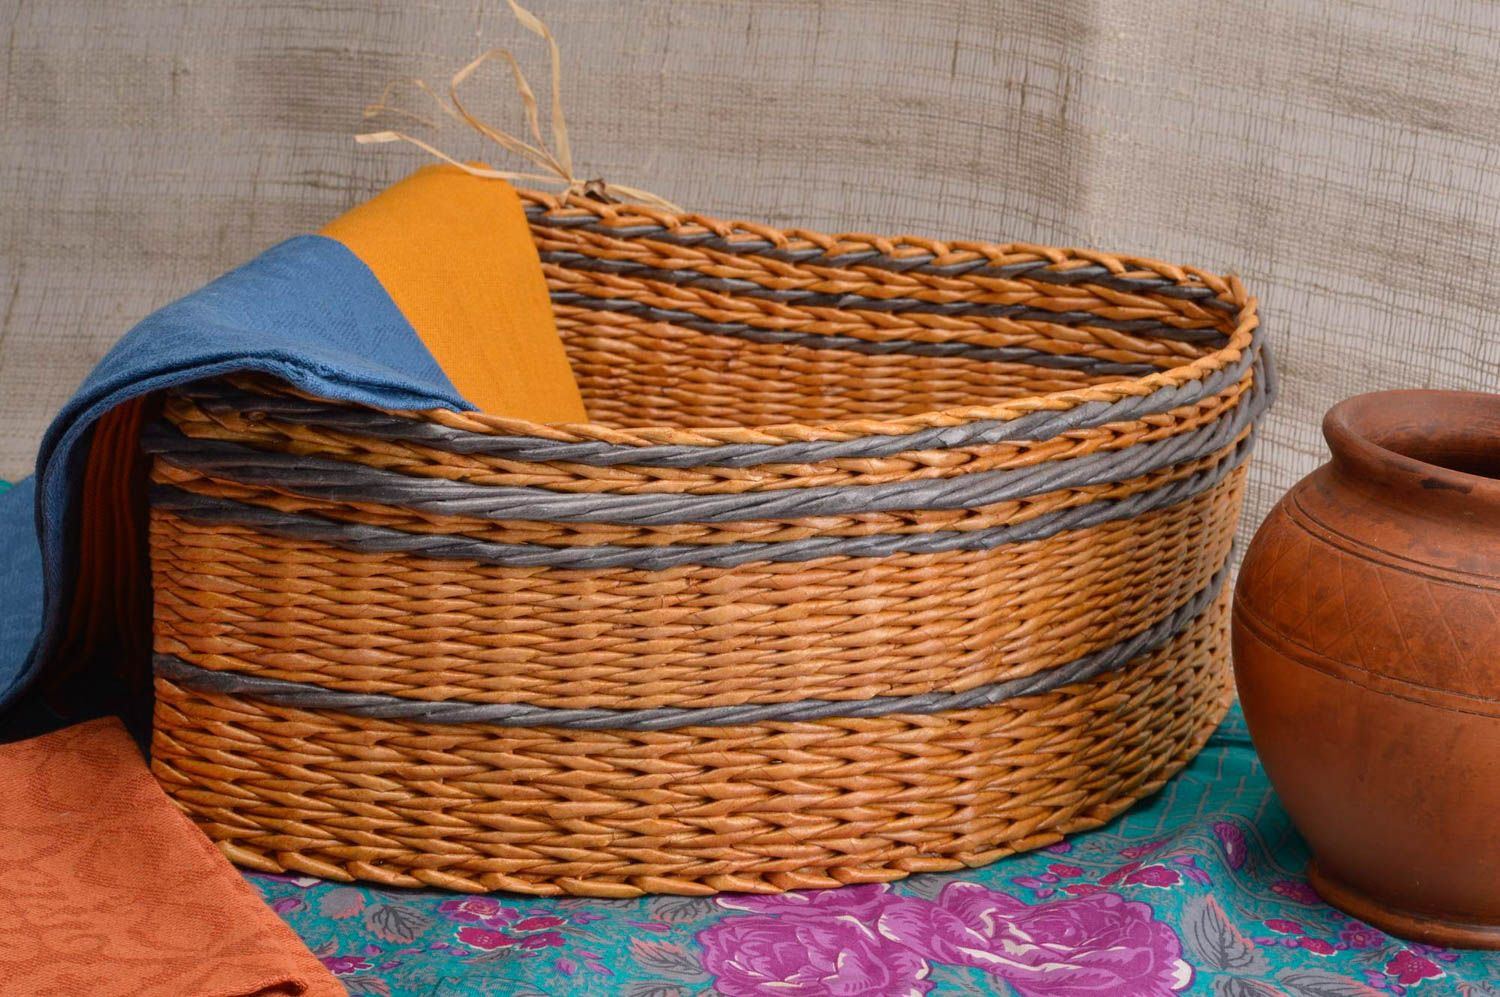 Предмет интерьера ручной работы плетеная корзина в угол подарочная корзина фото 1